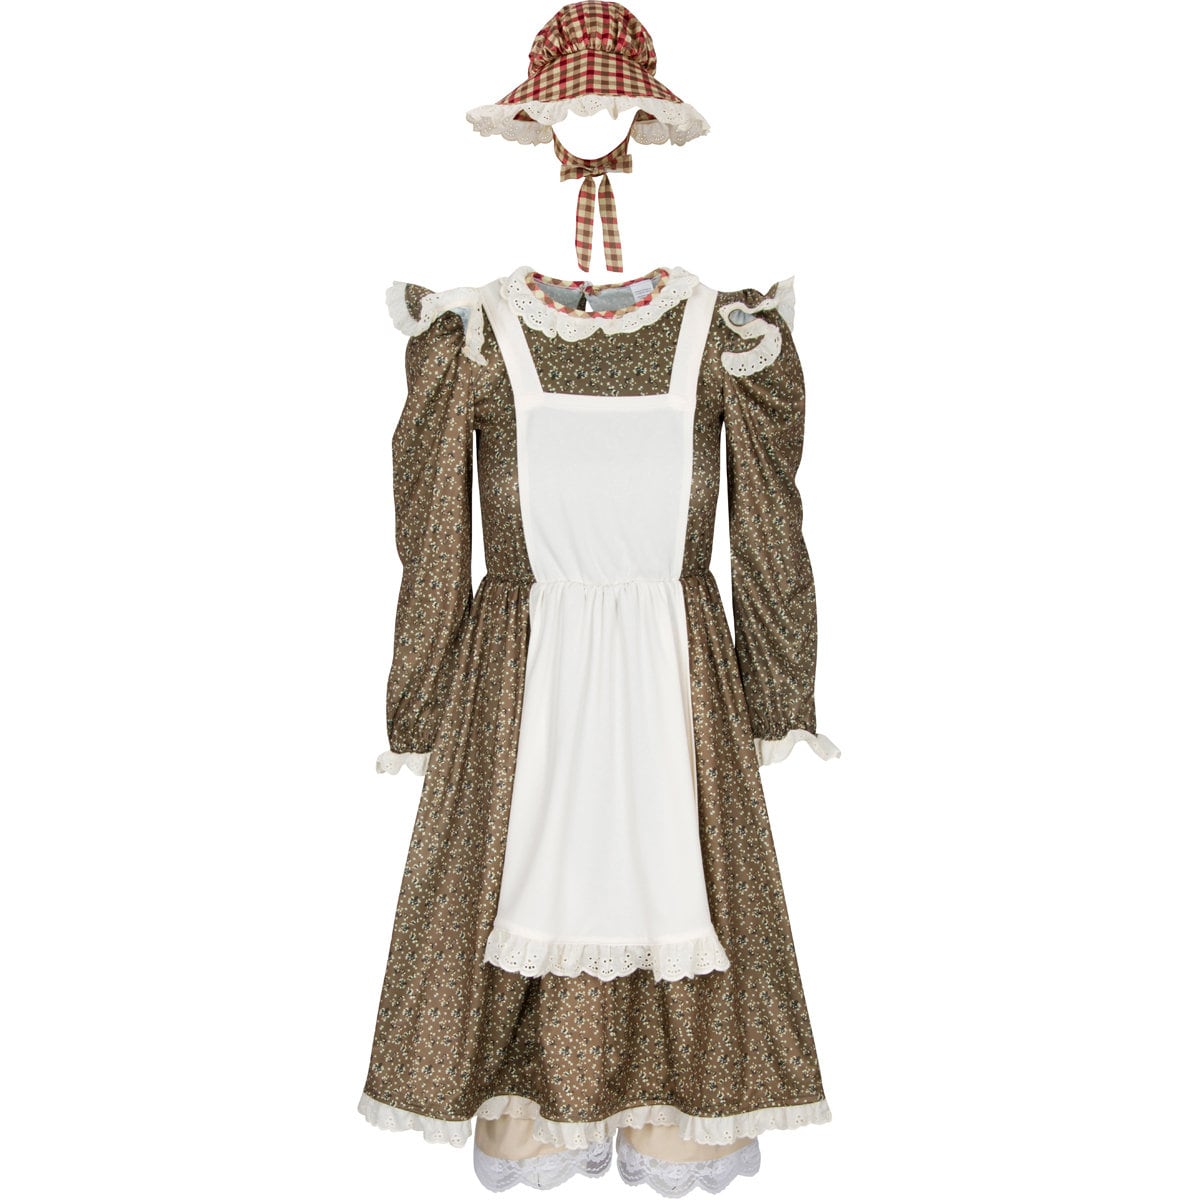  Pioneer Woman Costume Prairie Pioneer Dress Plus Size